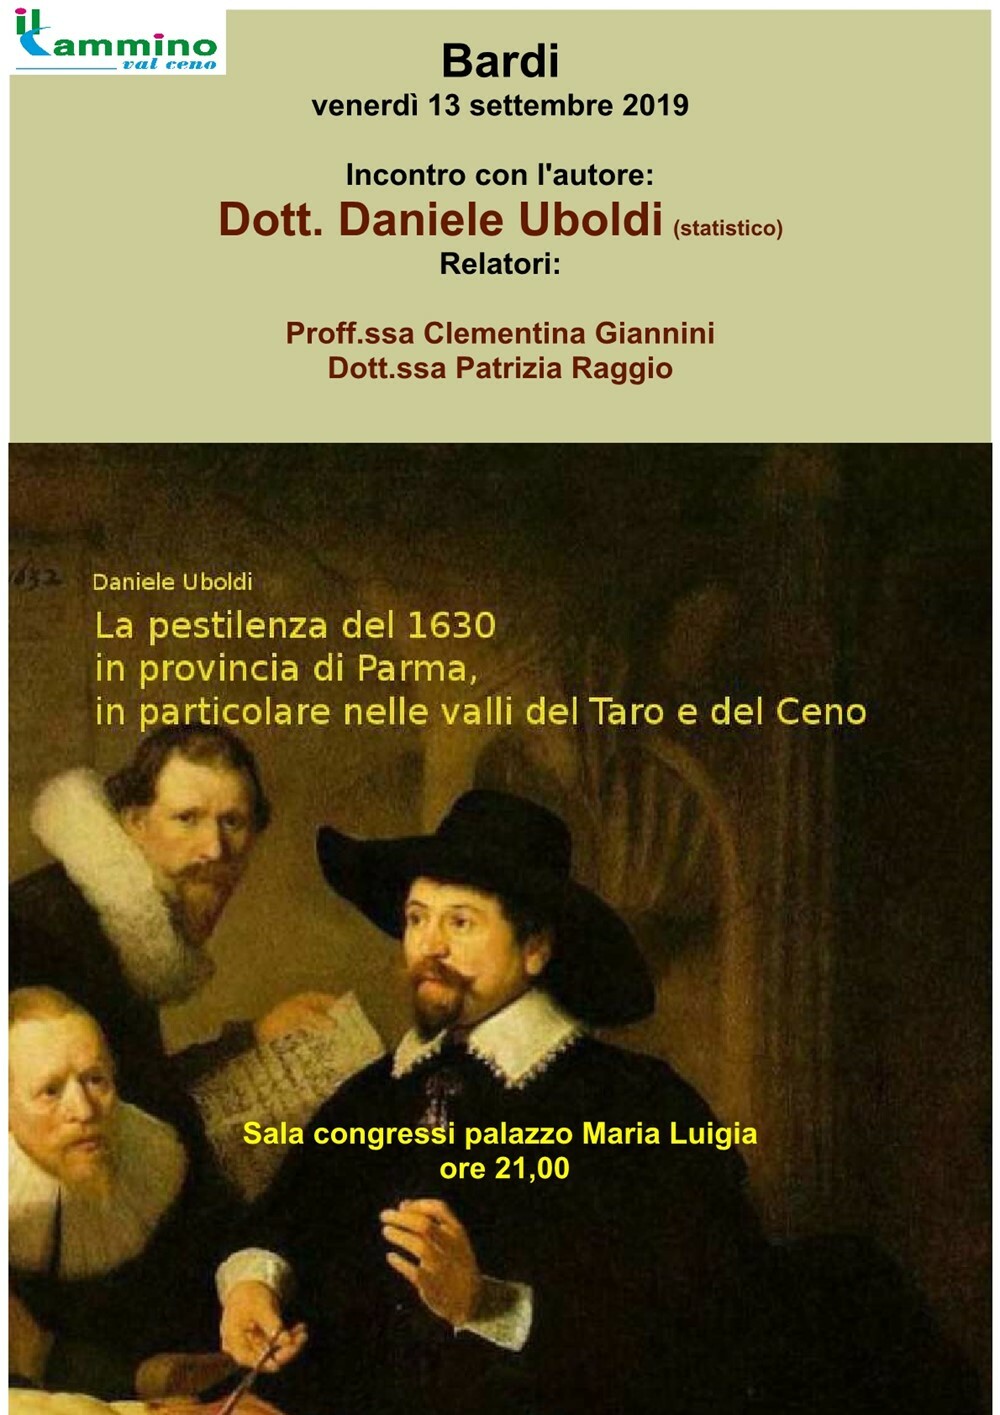 La pestilenza del 1630 in provincia di Parma